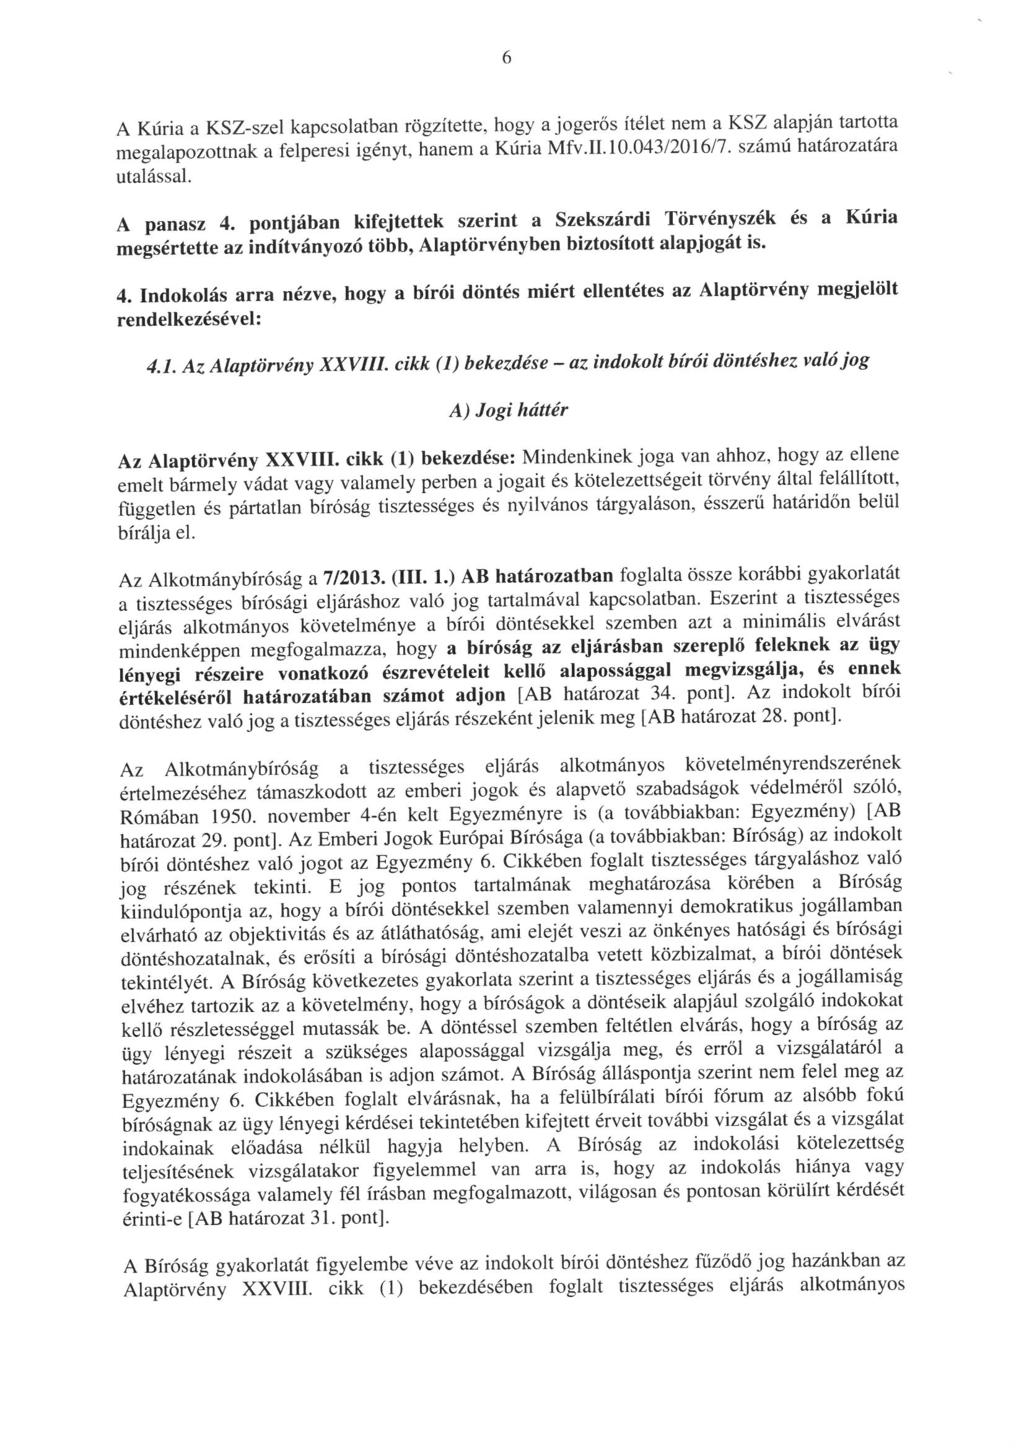 A Kúria a KSZ-szel kapcsolatban rögzítette, hogy a jogerős itélet nem a KSZ alapján tartotta megalapozottnak a felperesi igényt, hanem a Kúria Mfv. II. 10.043/2016/7. számú határozatára utalással.